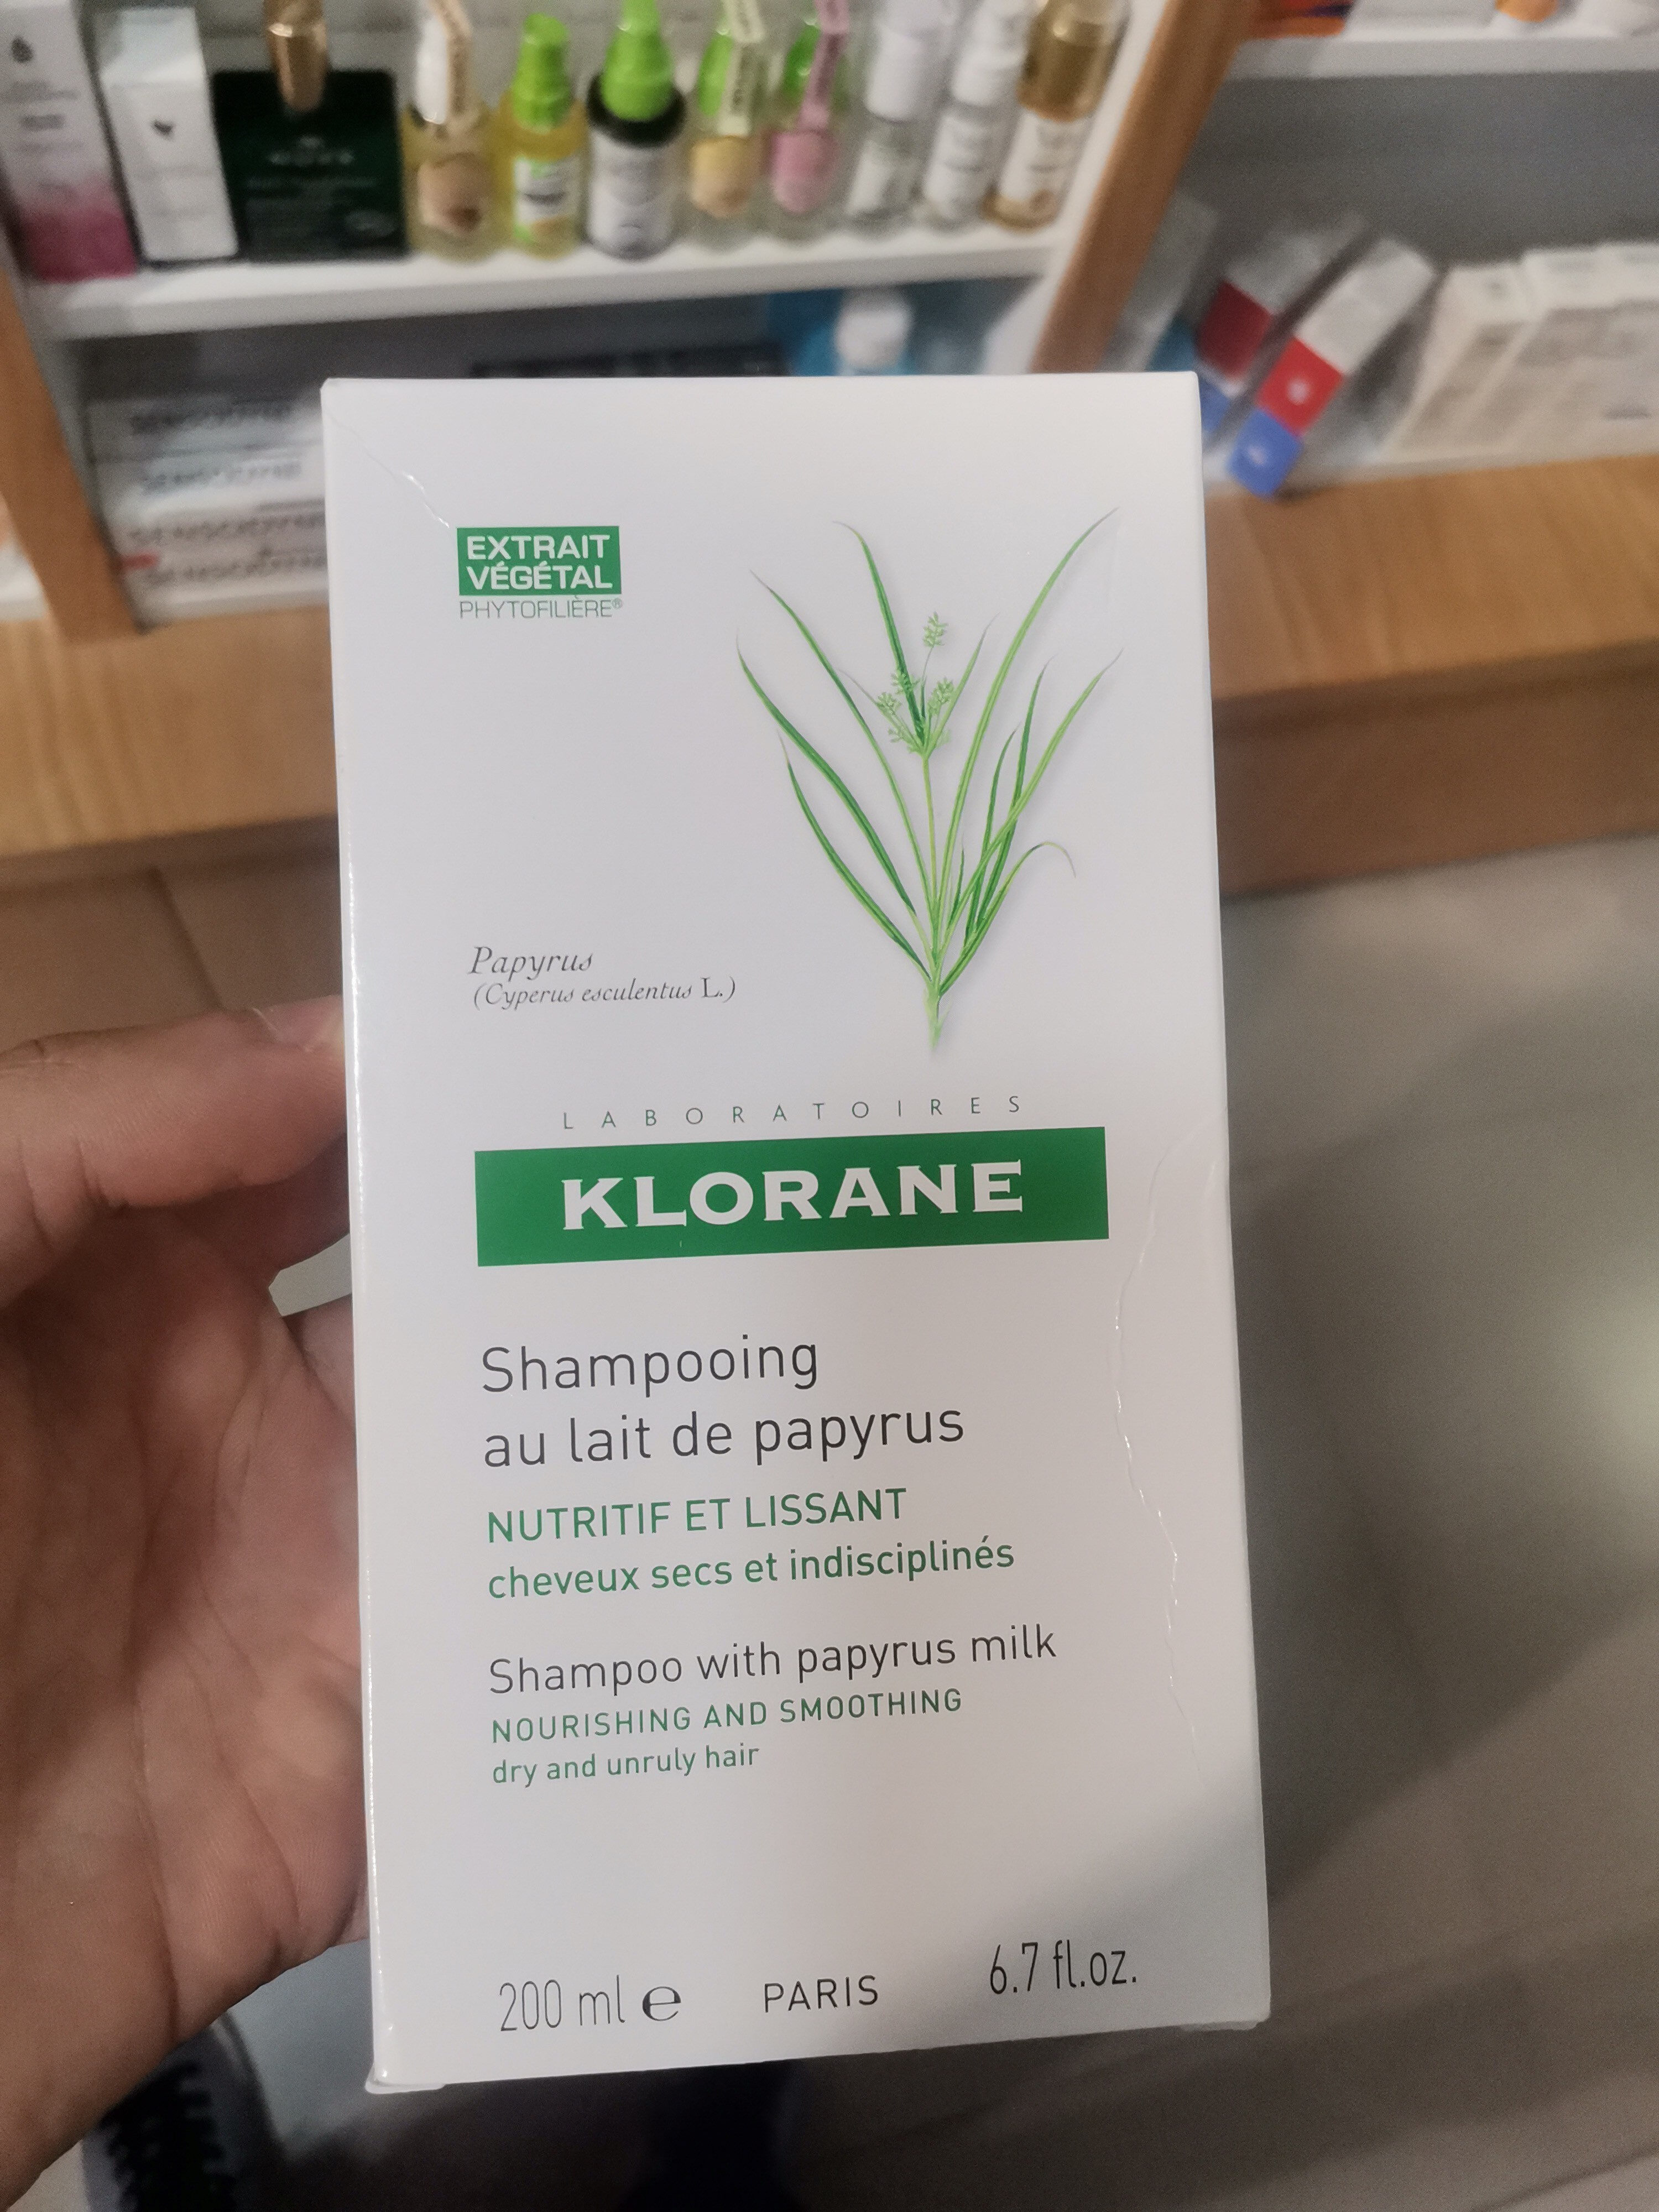 Klorane Shampoing au lait de papyrus - Produit - fr